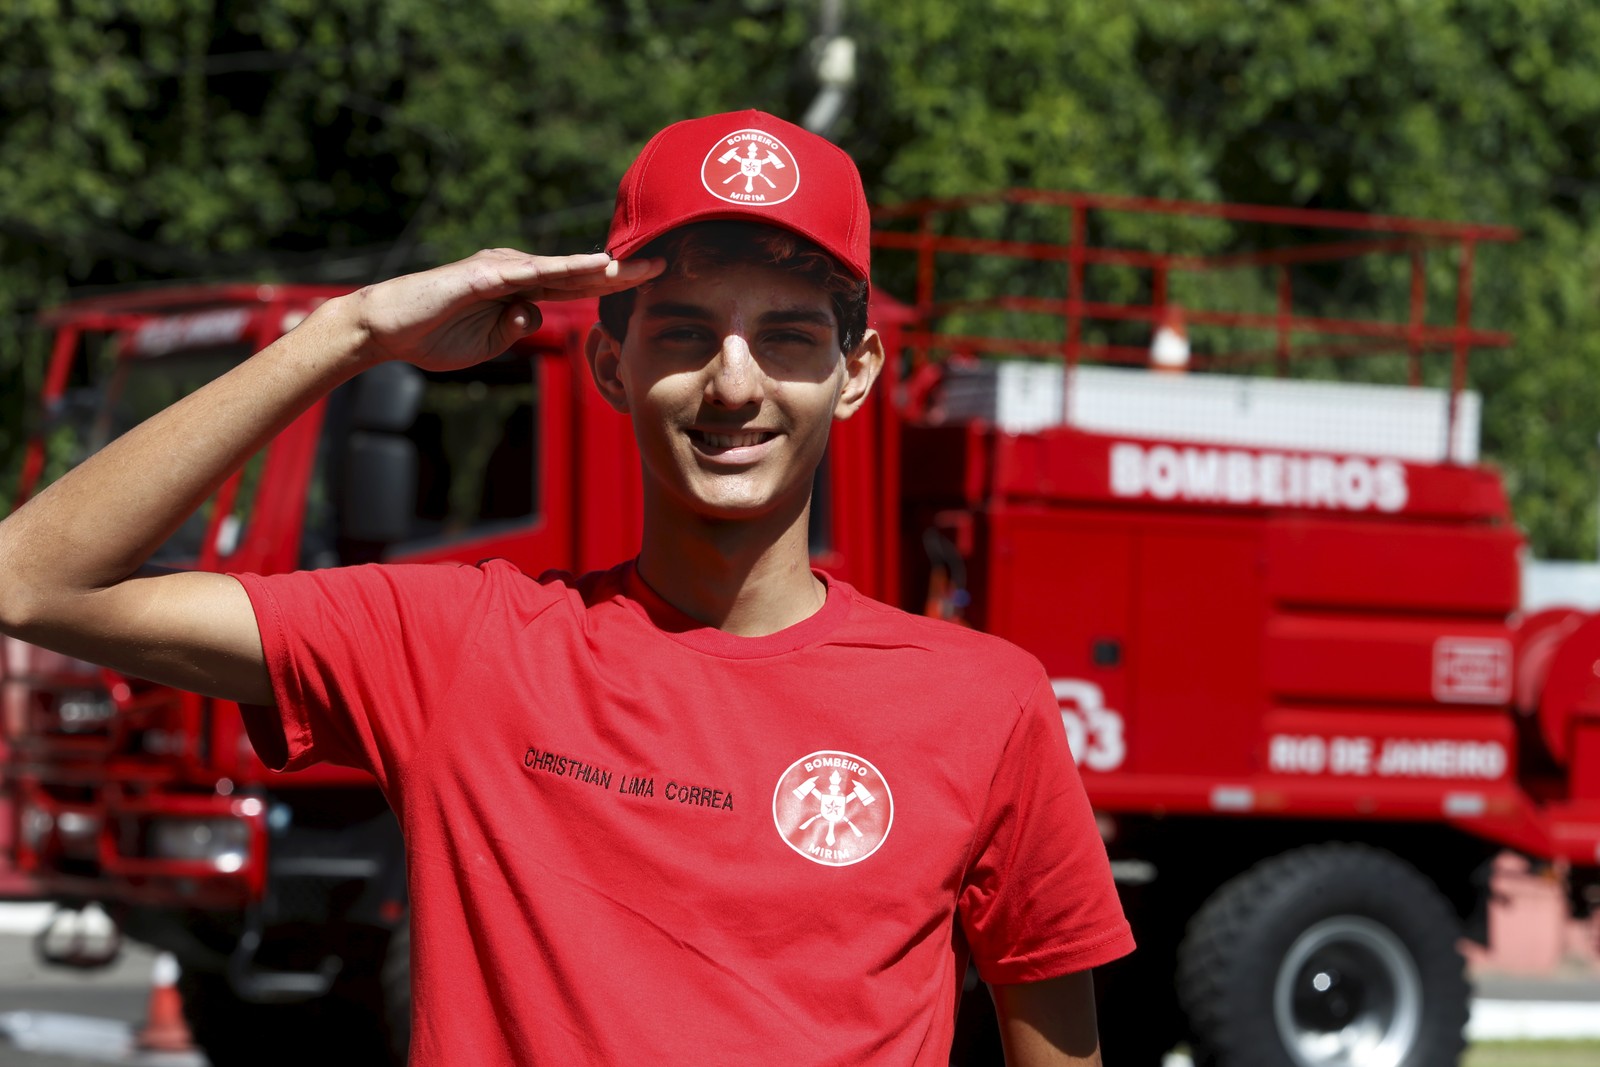 Christhian com a camisa que ganhou do Corpo de Bombeiros — Foto: Fabiano Rocha/Agência O Globo